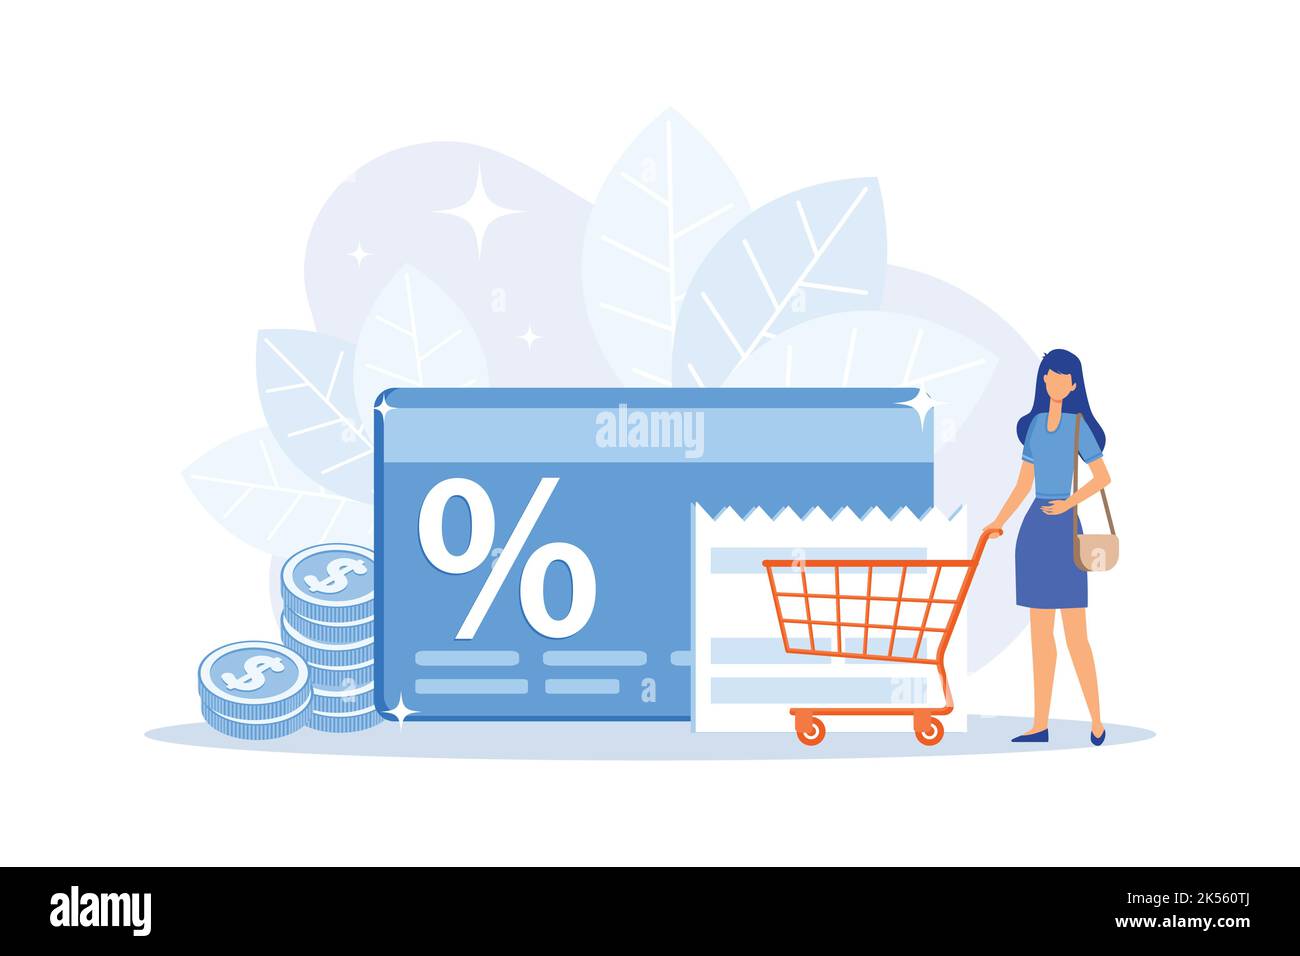 Marketing-Strategie Cartoon Web-Symbol. Loyalität Geschäftsmodell, Shopping Rabatt Angebot, Kundenbelohnung. Shop virtuelle Währung, Punkte tauschen. Vecto Stock Vektor